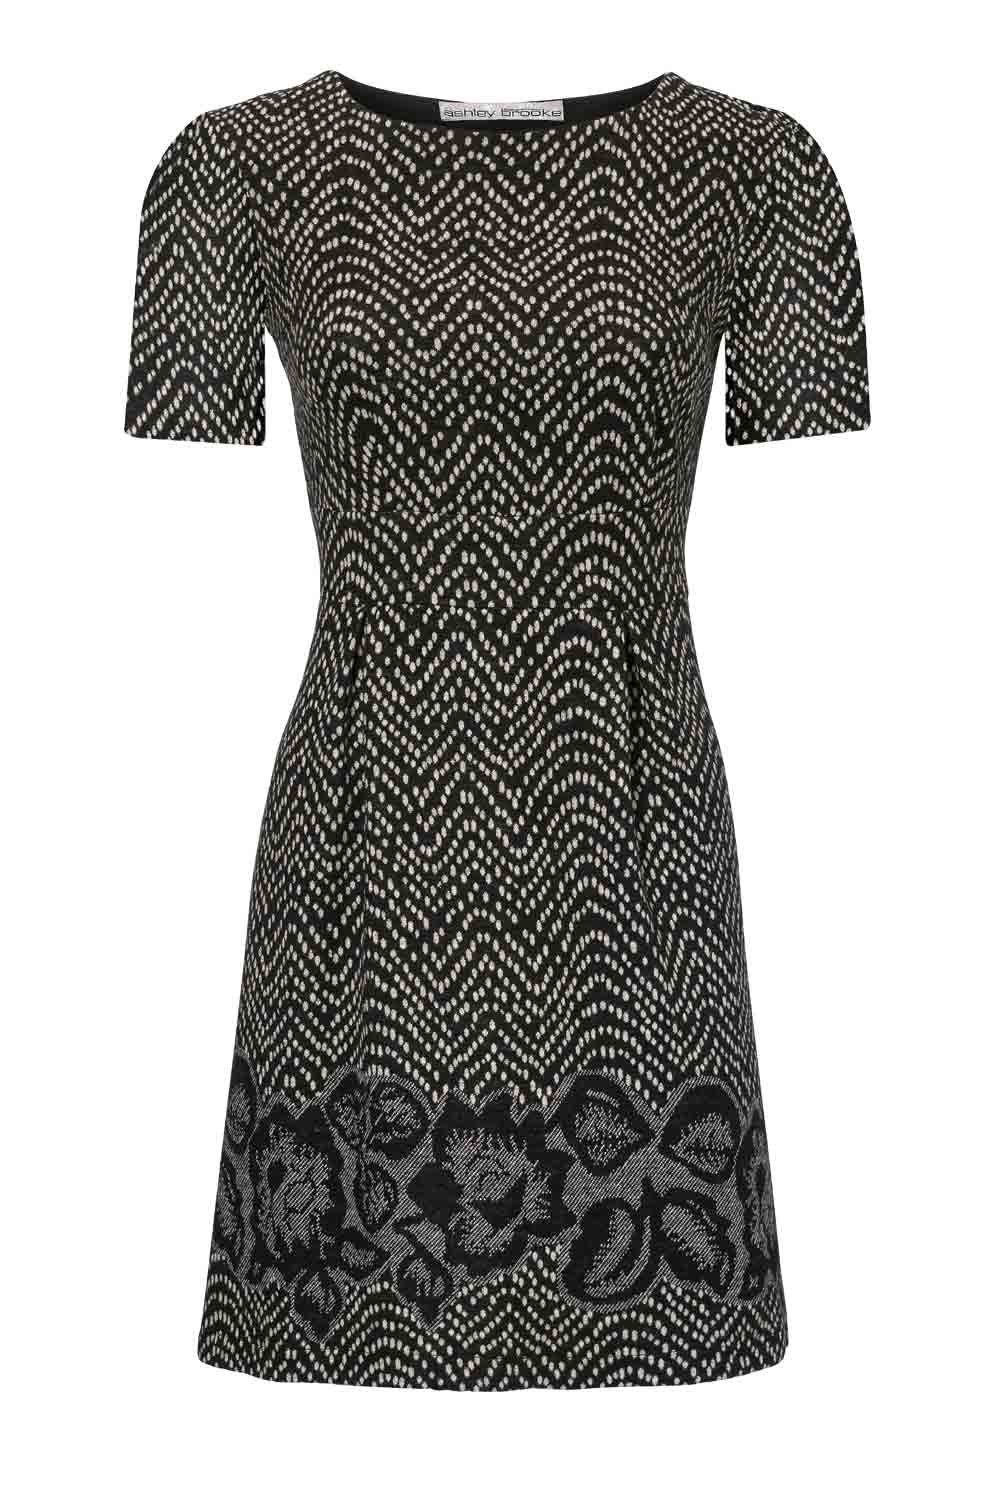 Ashley Brooke by heine Shirtkleid »Ashley Brooke Damen Designer-Kleid,  schwarz-creme« online kaufen | OTTO